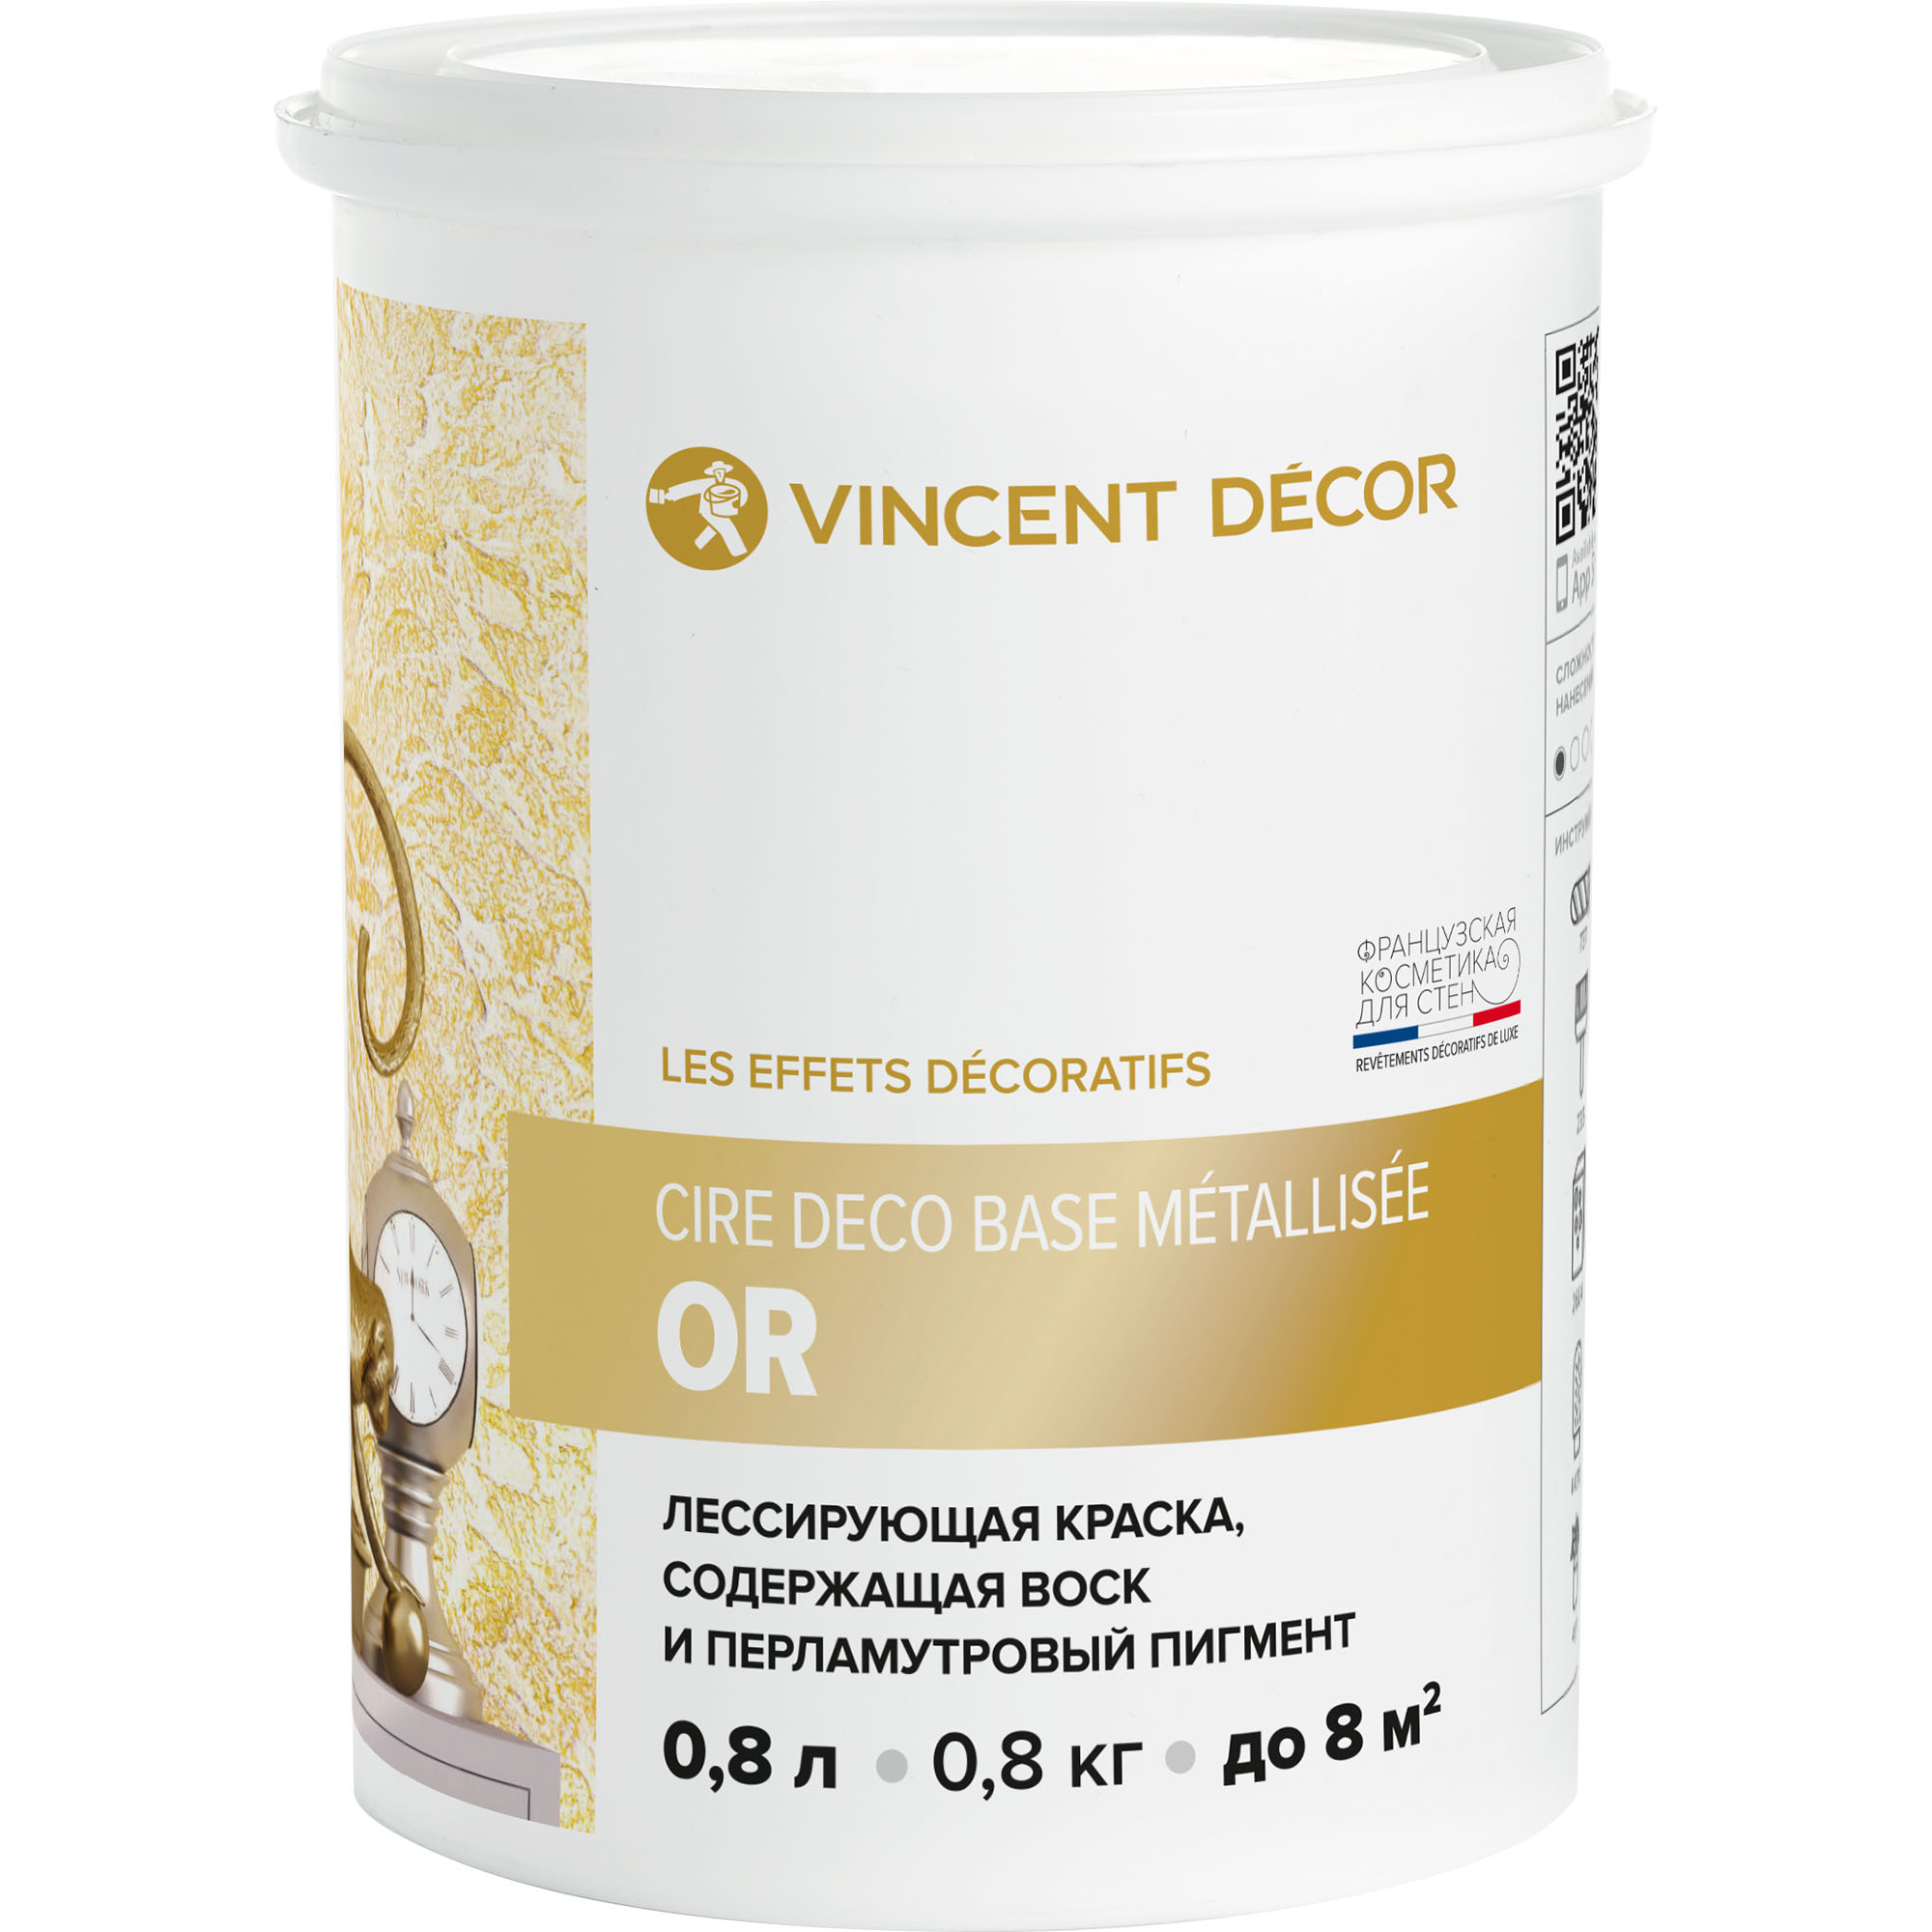 Краска лессирующая для декоративных покрытий Vincent Decor Cire deco base Metallisee Or золото 0,8 л грунтовка для декоративных покрытий vincent decor sous couсhe 2 5 л